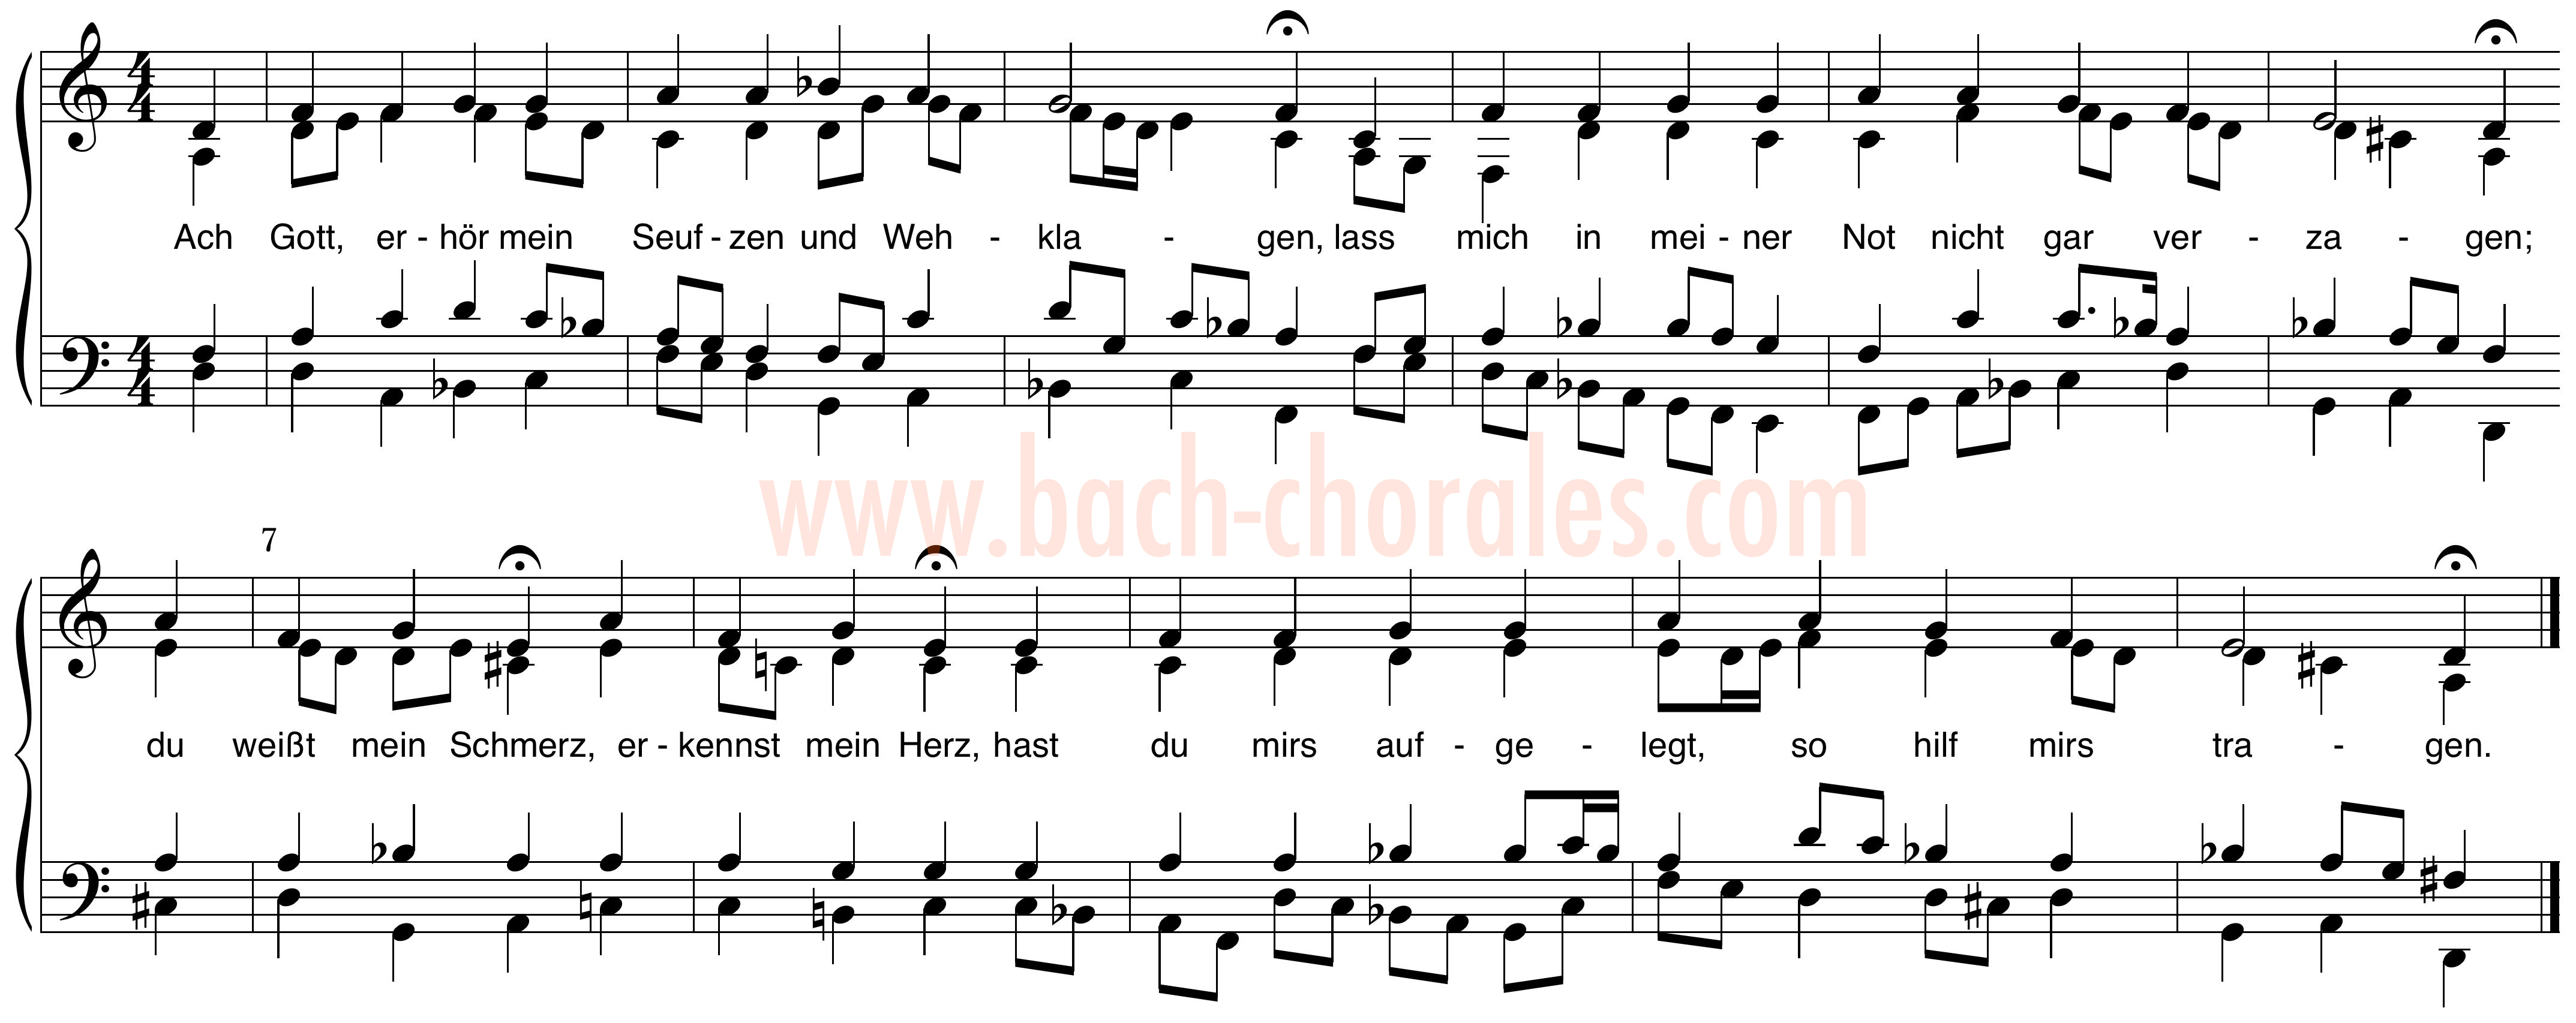 notenbeeld BWV 254 op https://www.bach-chorales.com/